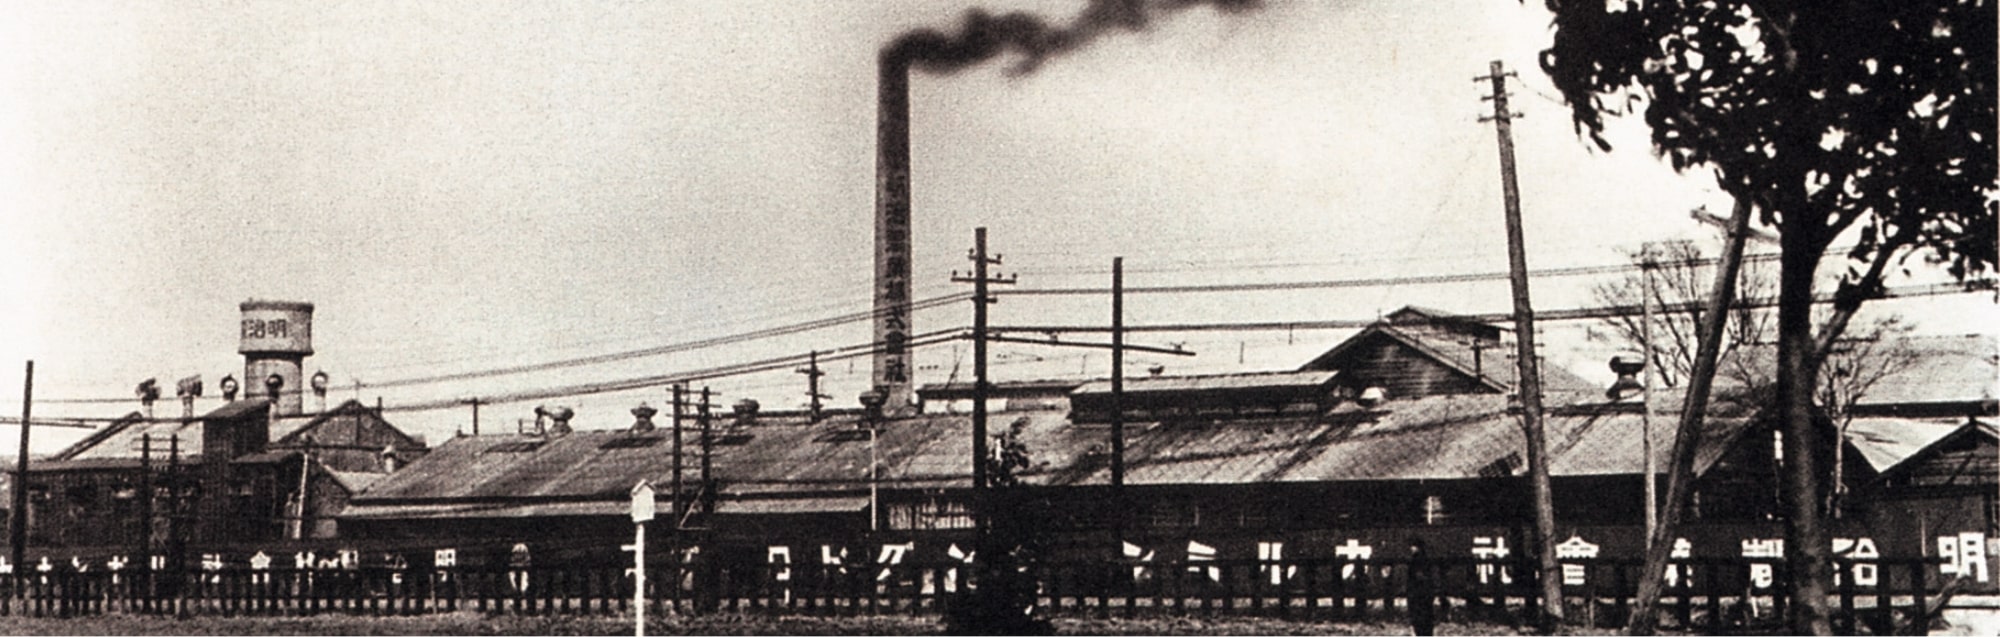 一家老糖果厂的照片